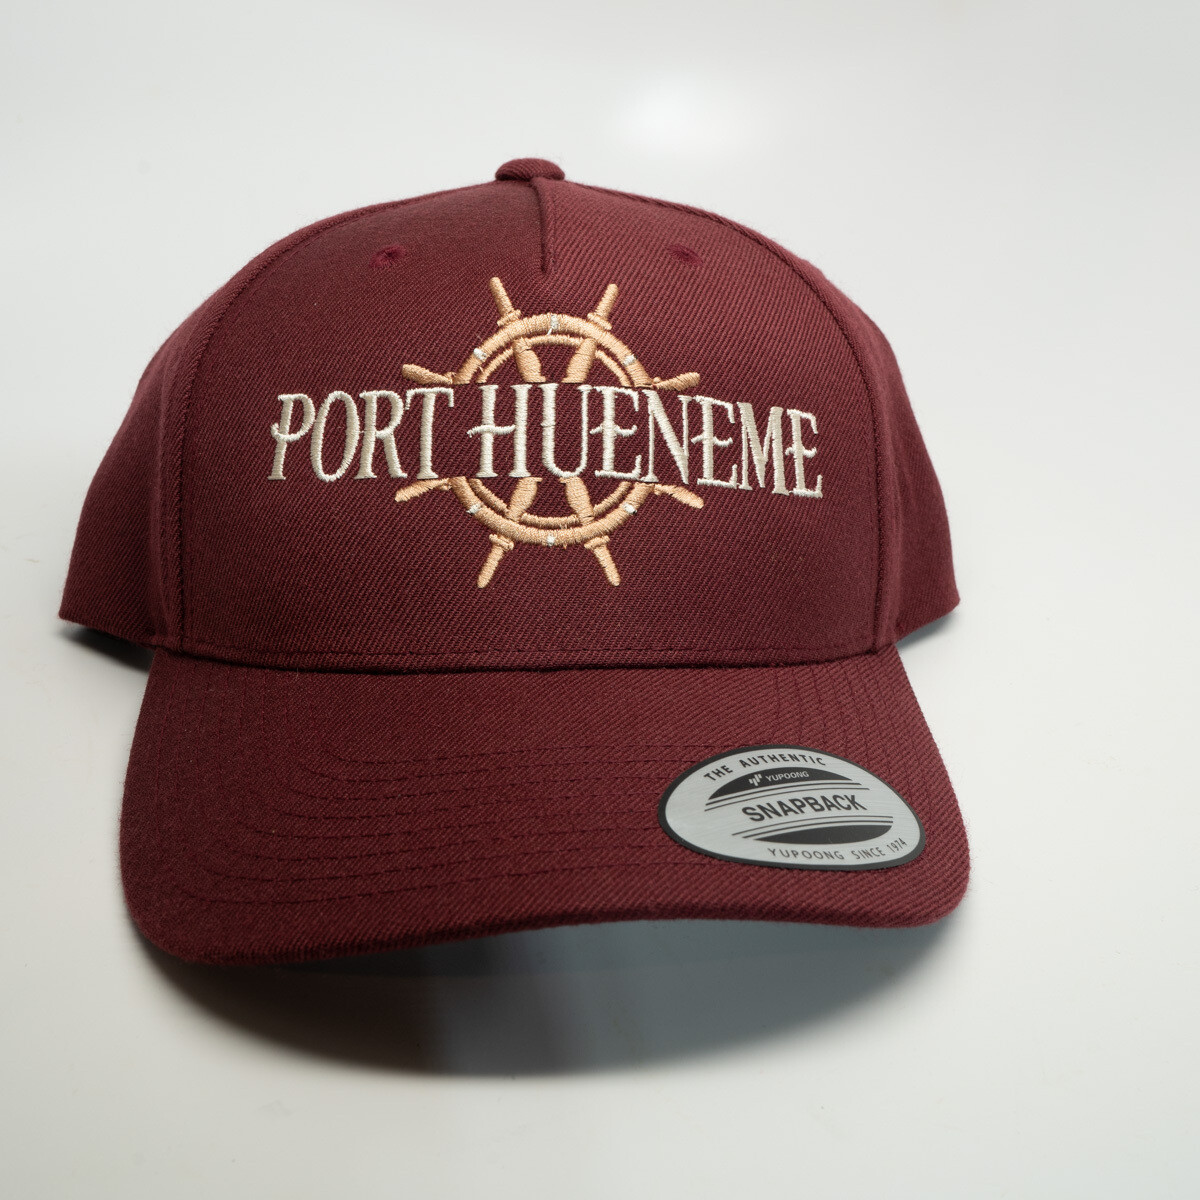 Port Hueneme Captains Wheel Hat